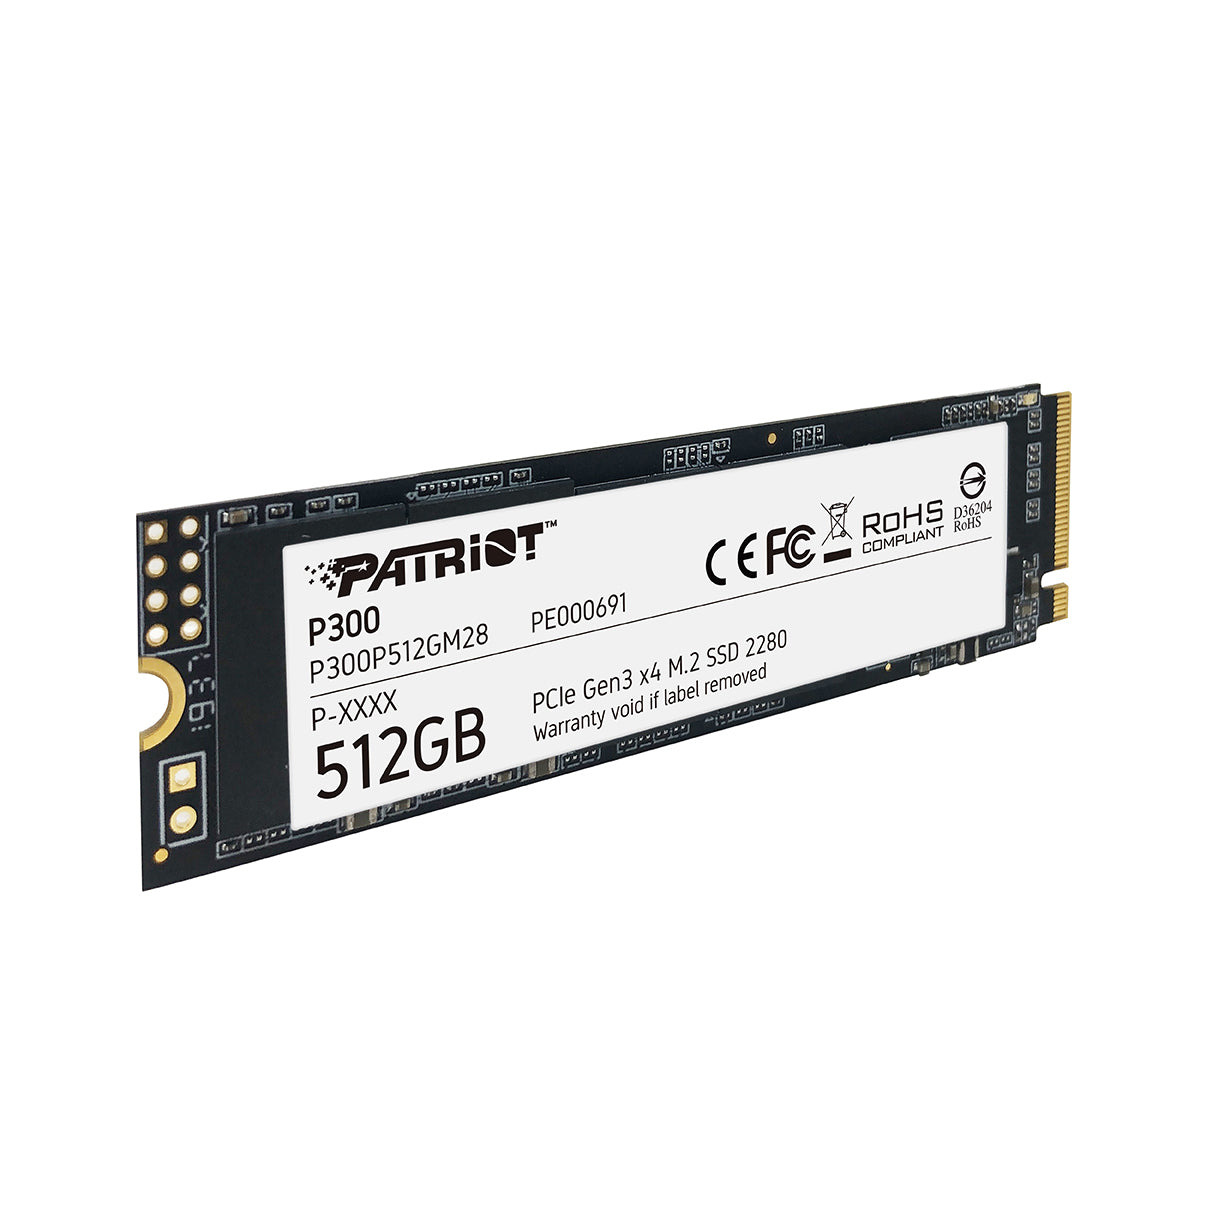 Disco duro solido Patriot P300 512GB M.2 PCIe (P300P512GM28)